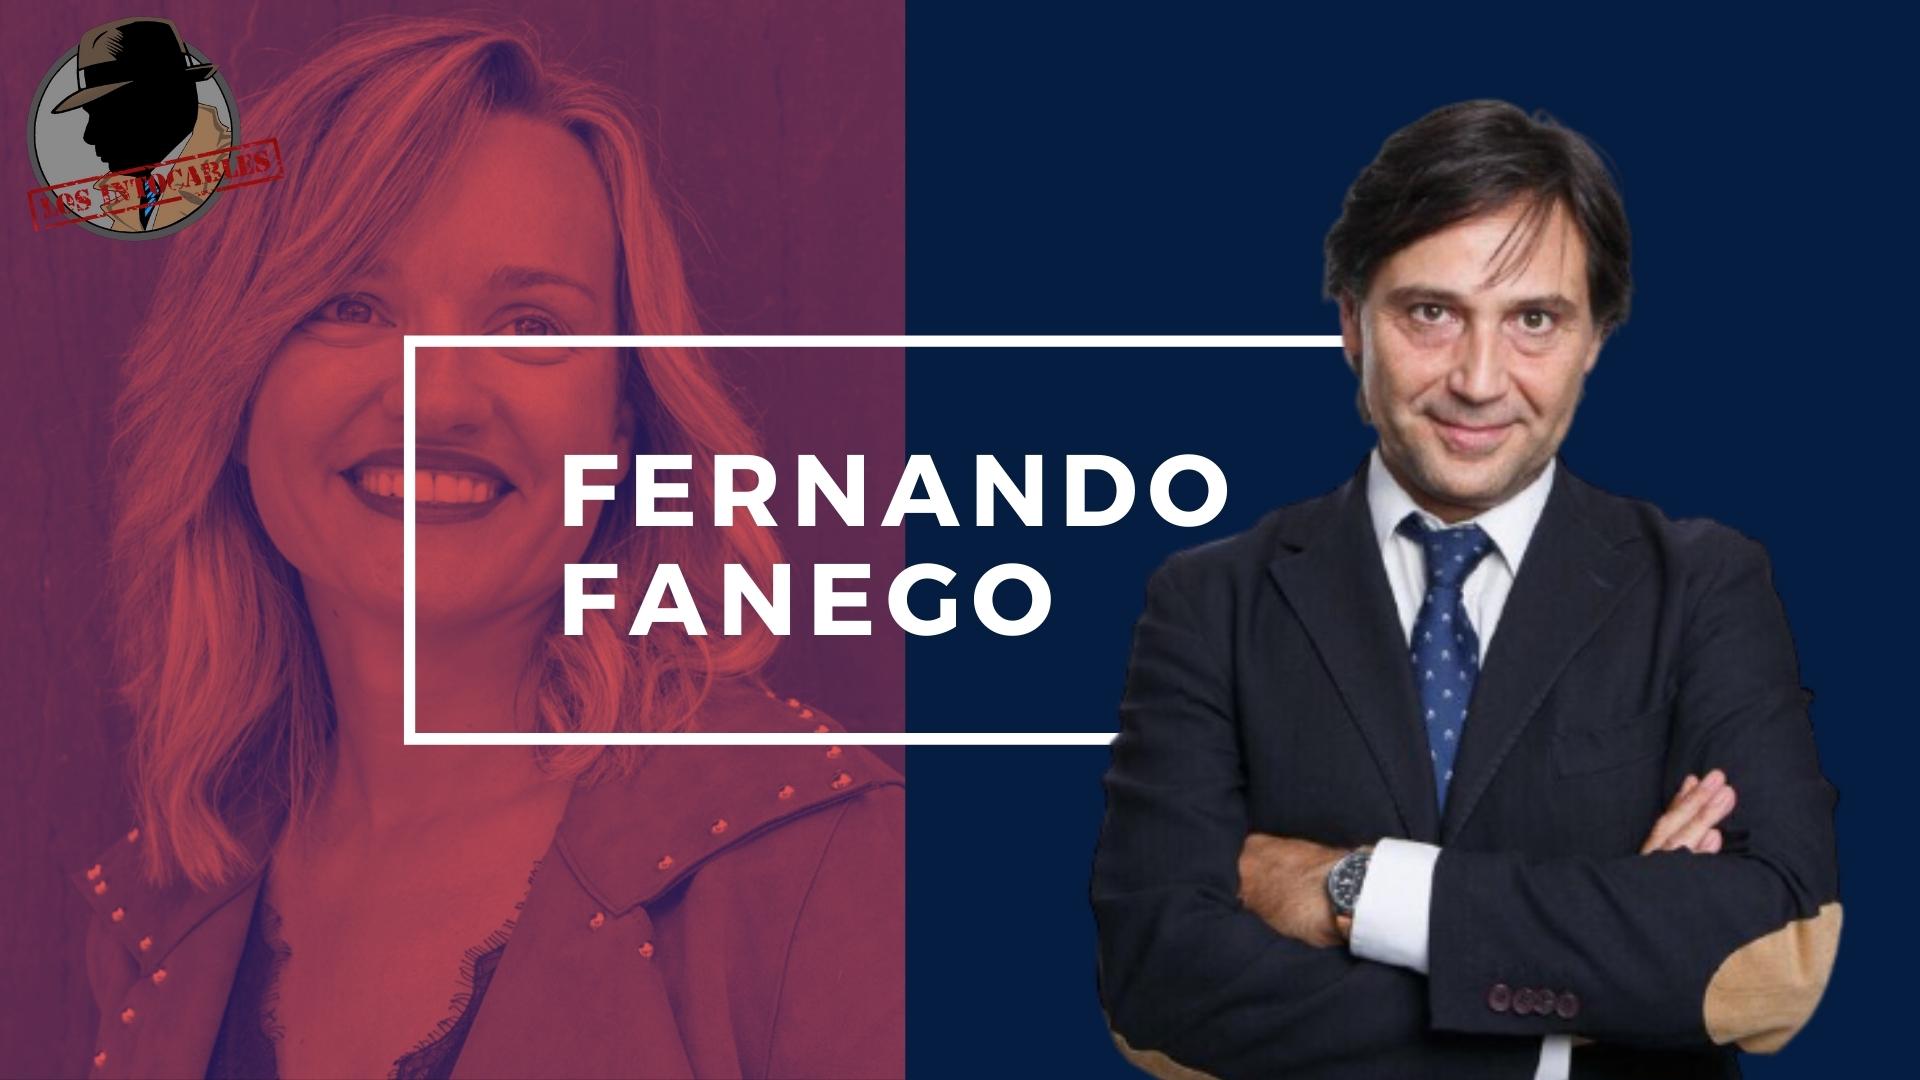 FERNANDO FANEGO